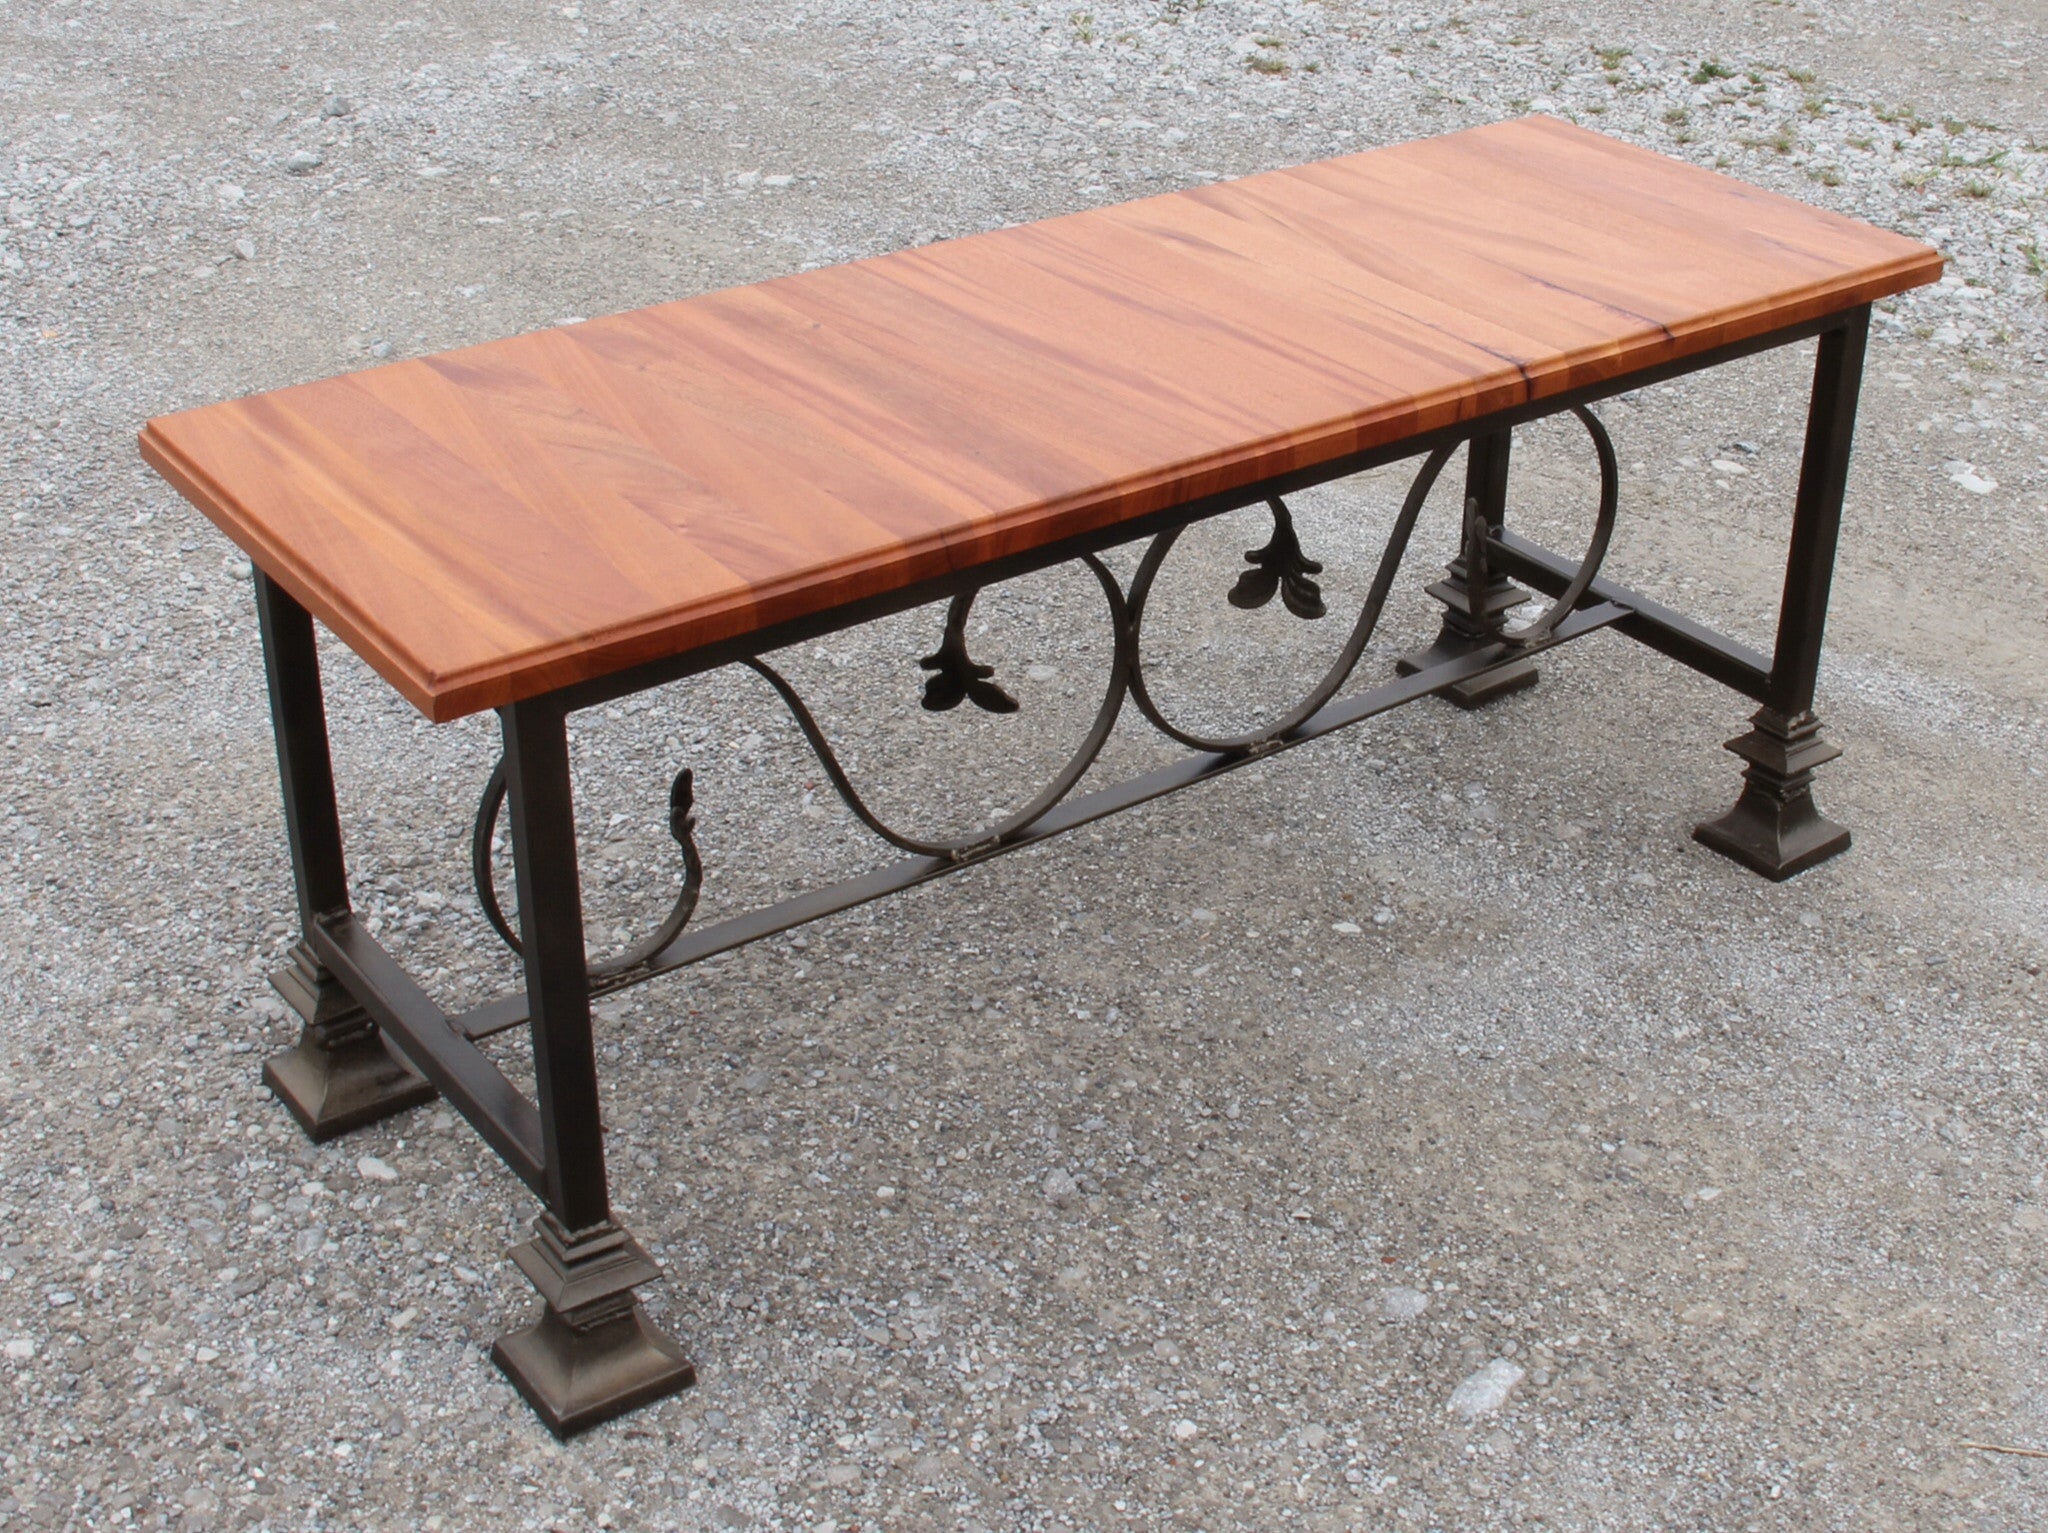 Bench-mahogany and wrought iron